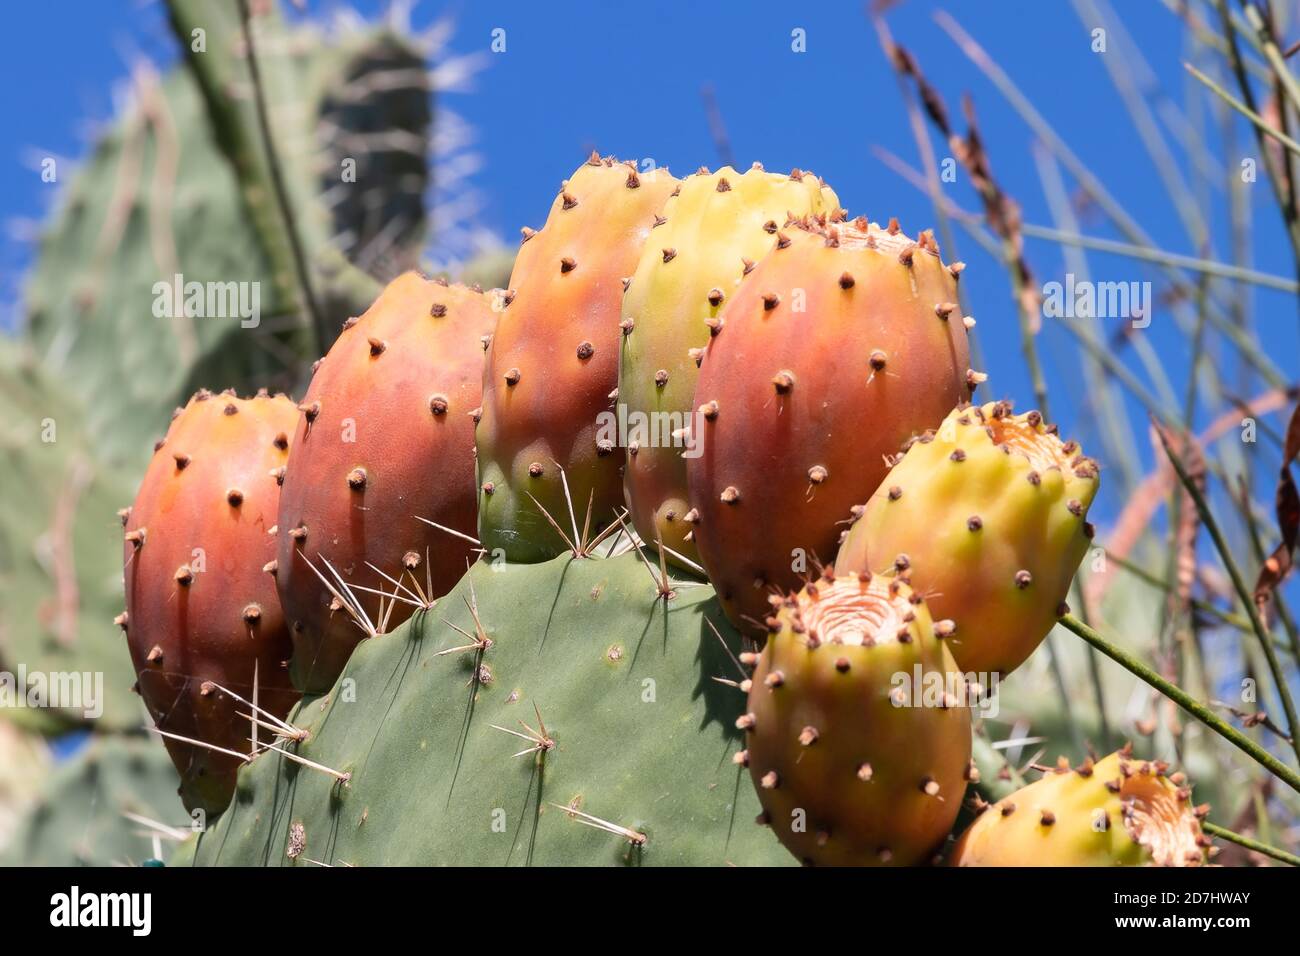 Kaktus aus Kaktus mit Kaktus aus Kaktus mit Kaktus in roter Farbe. Opuntia, allgemein als Kaktusbirne bezeichnet, ist eine Gattung in der Kaktusfamilie, Cactaceae. Stachelige Birnen Stockfoto